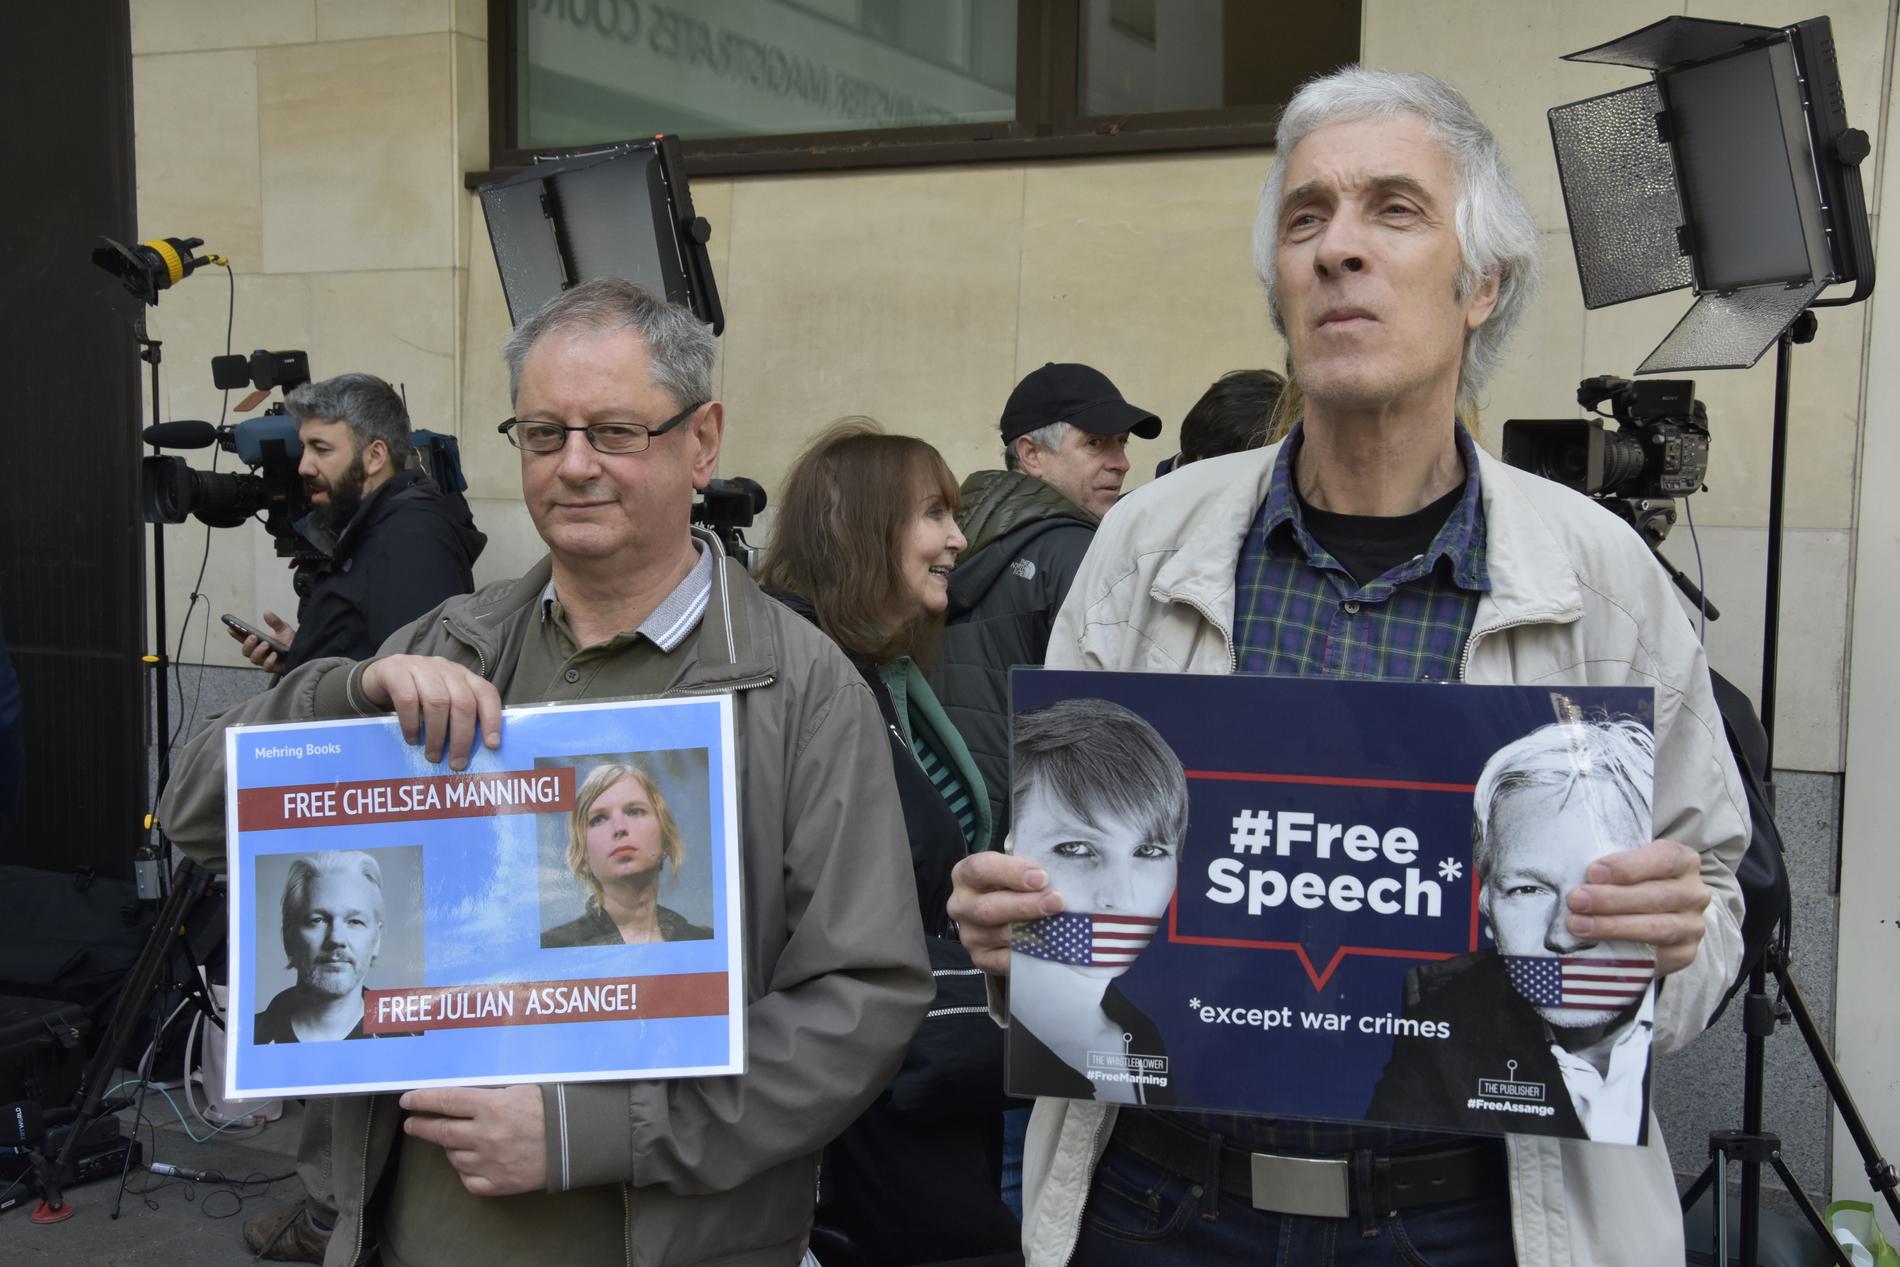 Arwyn och Alasdair är två av de många som har samlats i London för att visa sitt stöd för den gripne Wikileaks-grundaren Julian Assange. Många demonstranter finns på plats utanför den domstol i London där processen kring Julian Assange pågår.